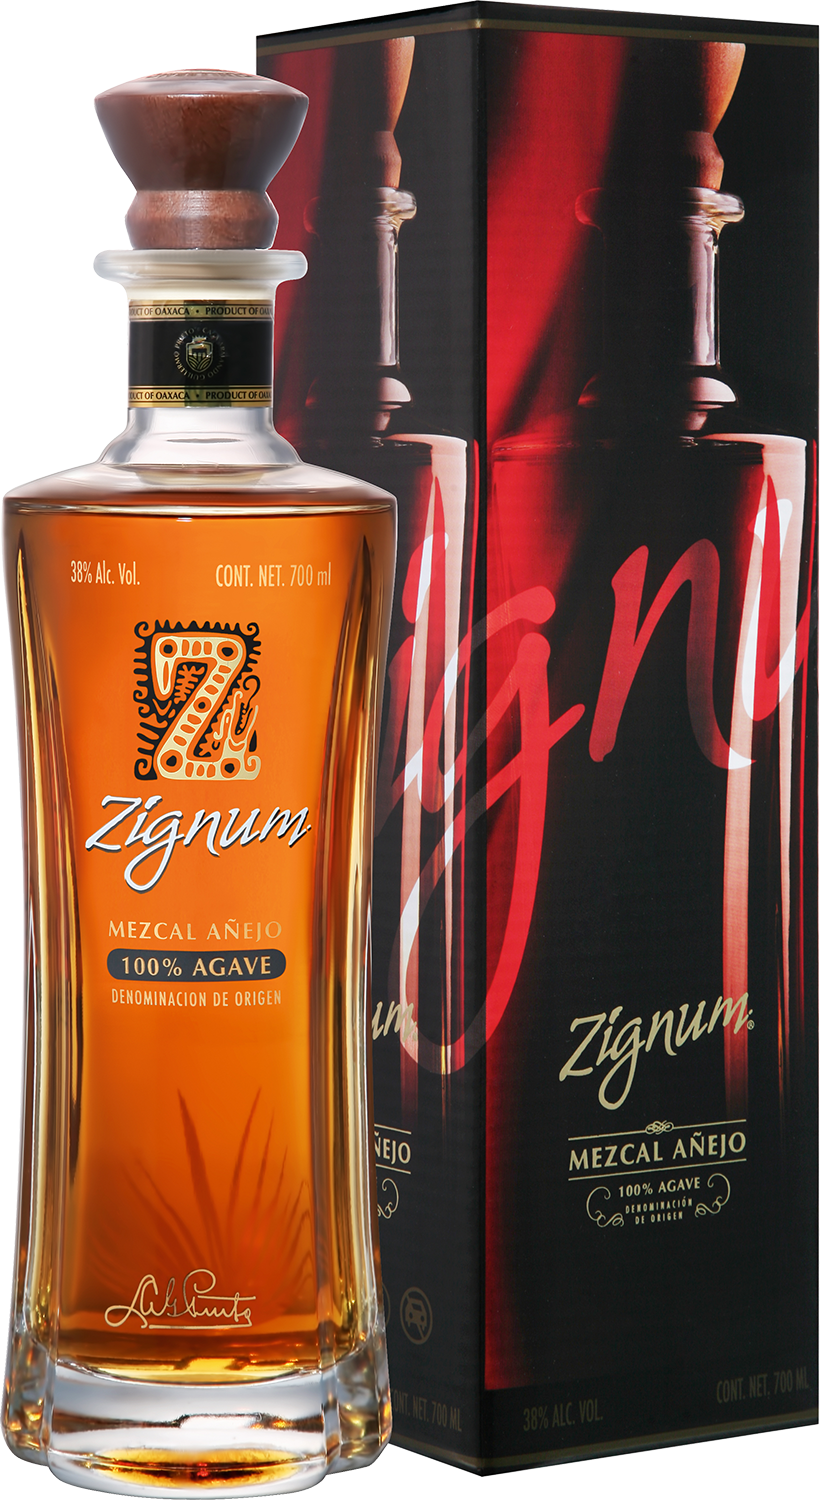 Zignum Anejo (gift box) rum havana club maximo extra anejo gift box